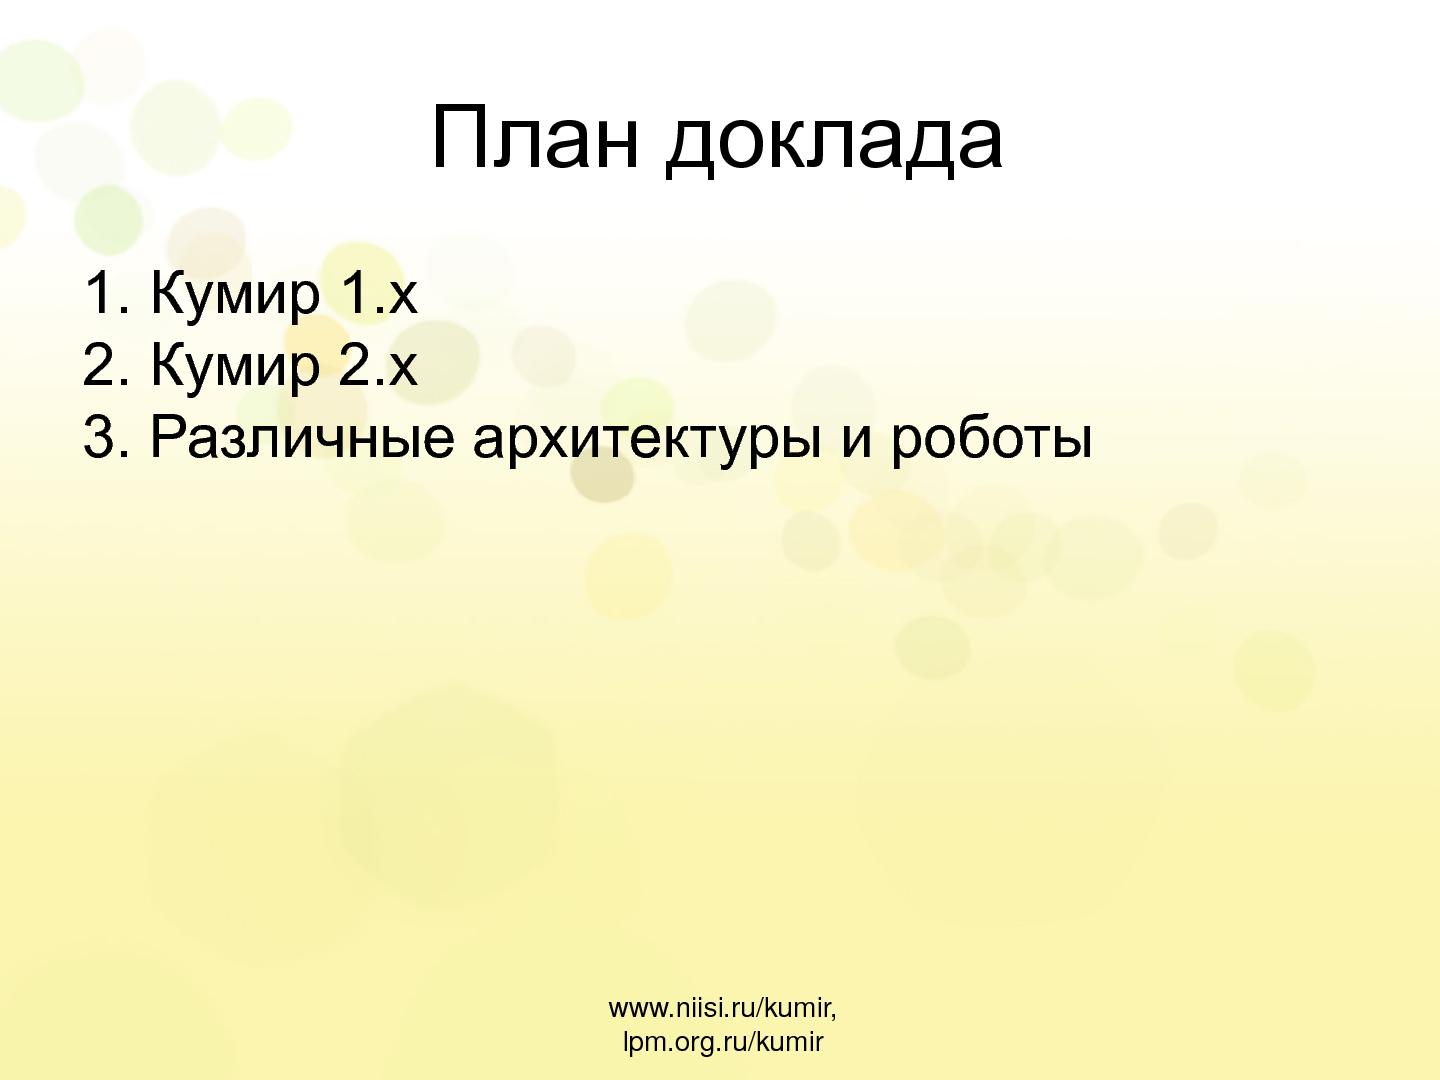 Файл:Кумир 2.0. Компилятор и среда выполнения (Виктор Яковлев, OSEDUCONF-2013).pdf